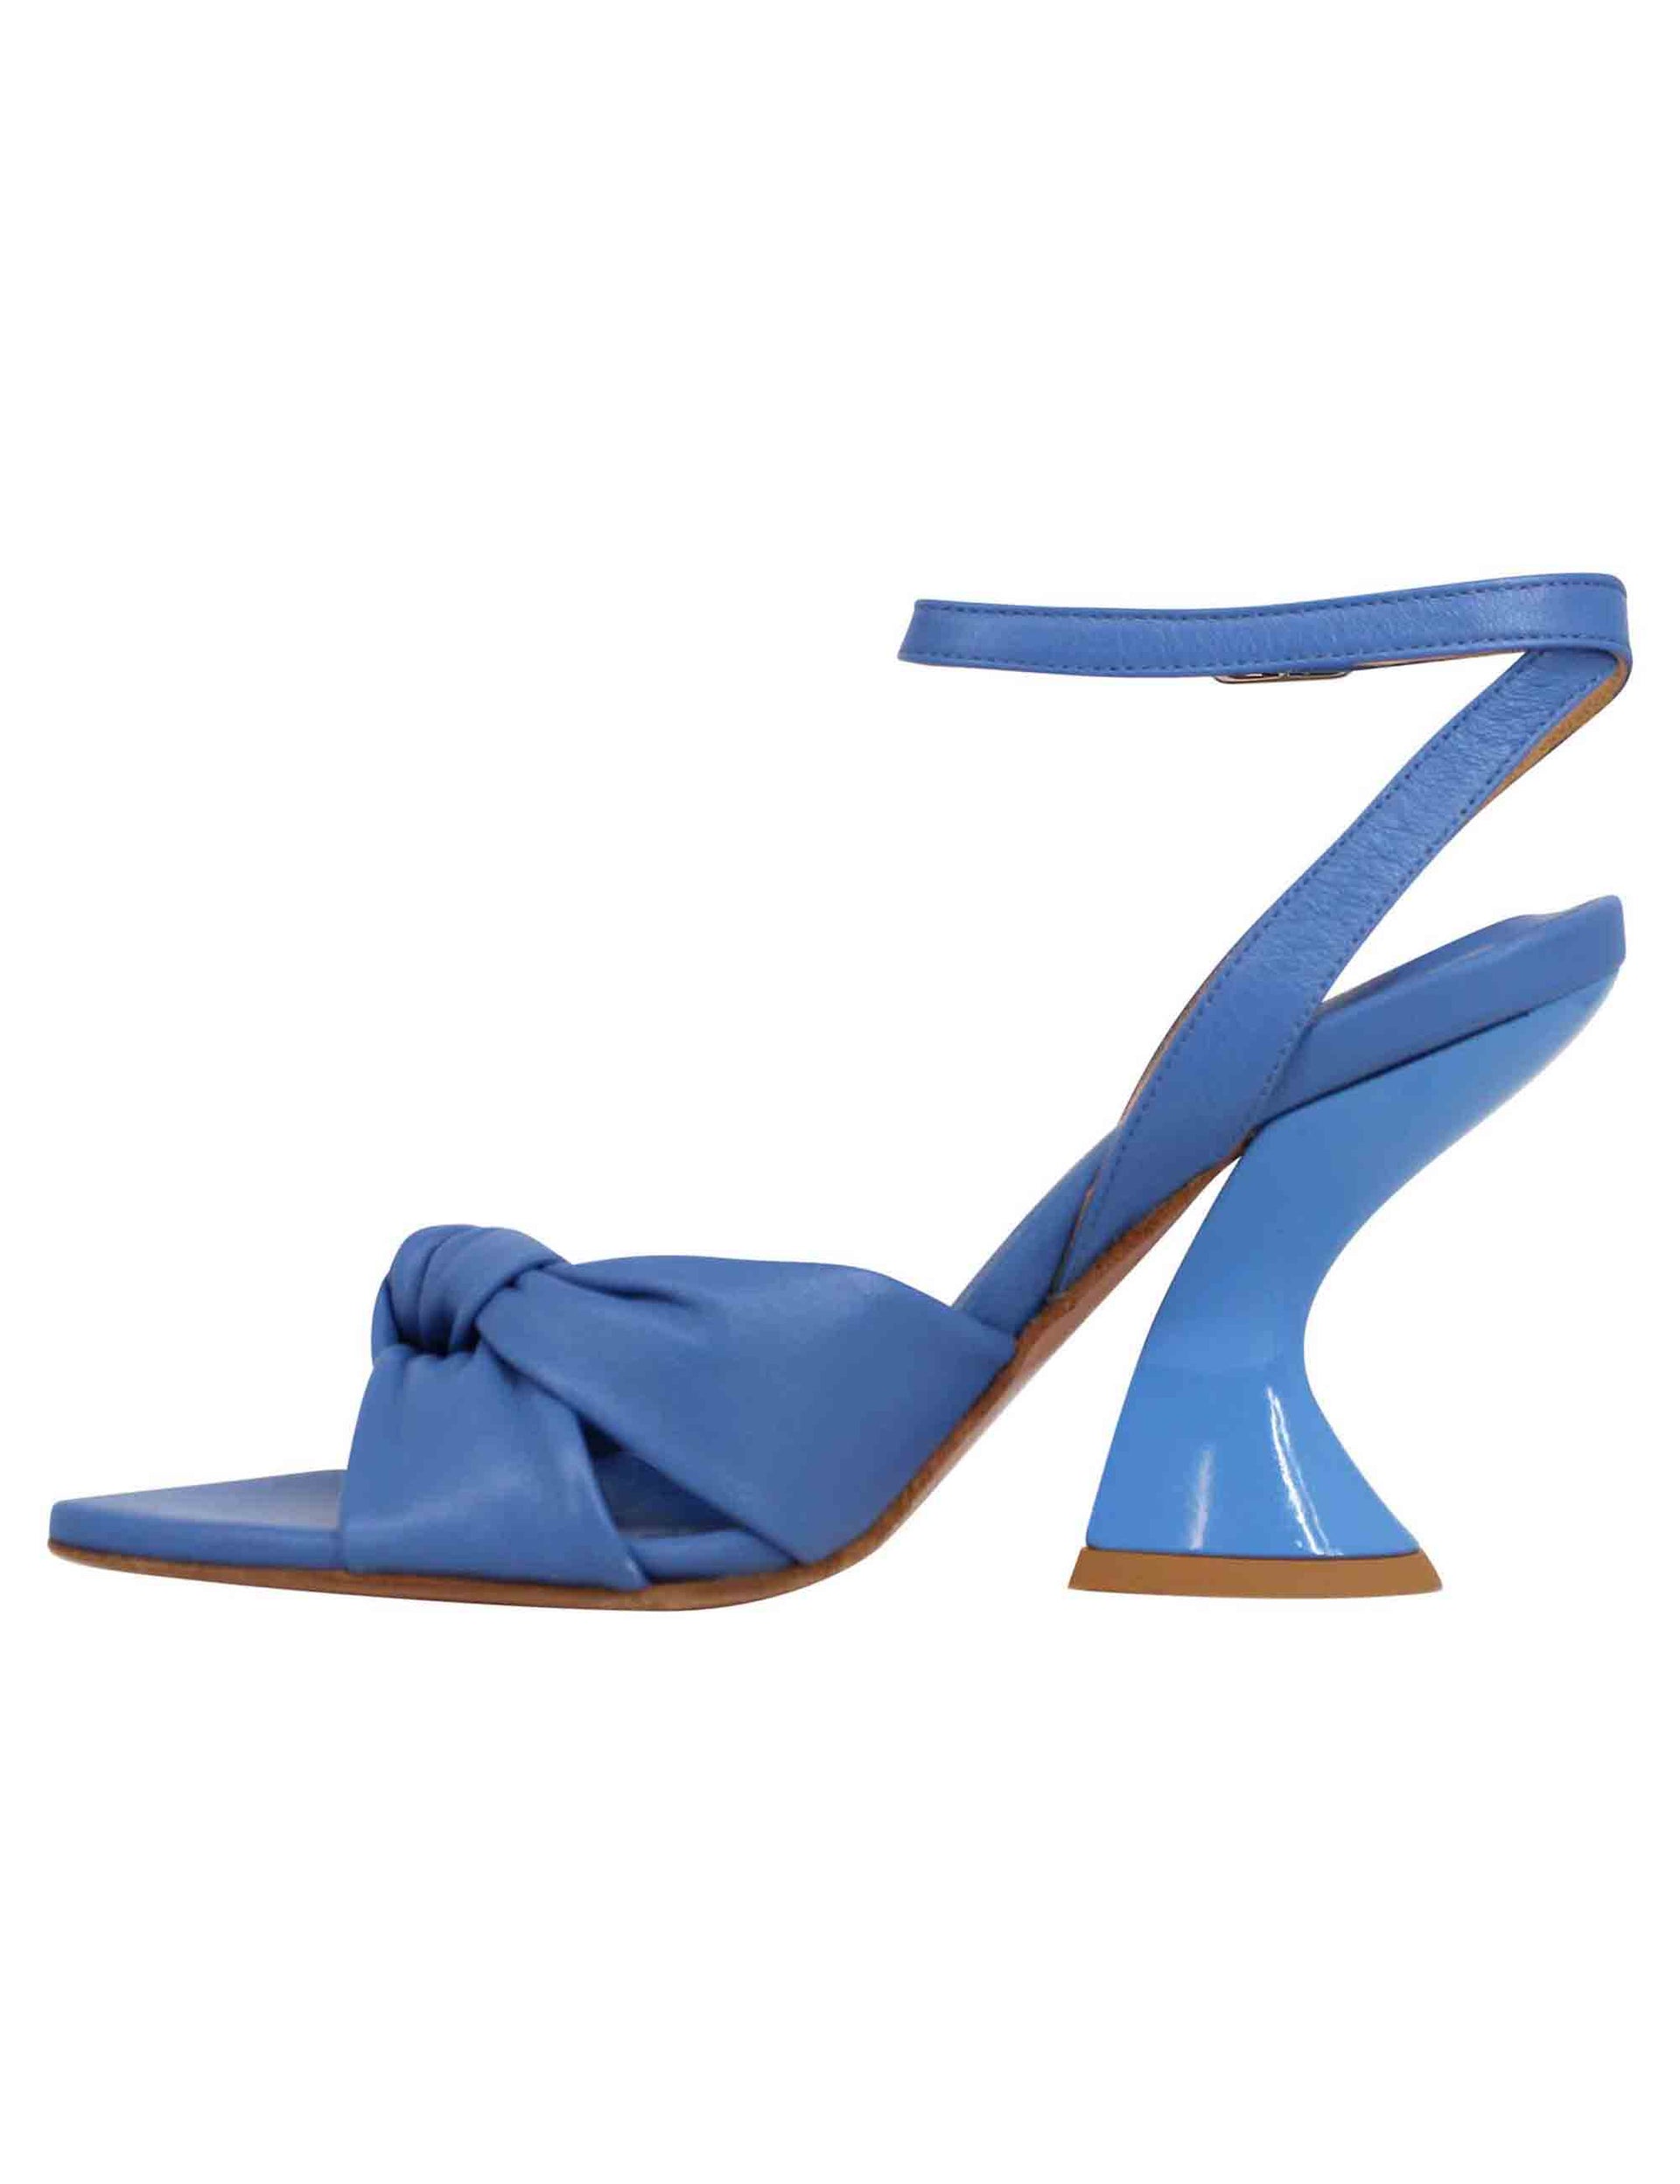 Sandali donna in pelle blu con tacco alto e cinturino alla caviglia